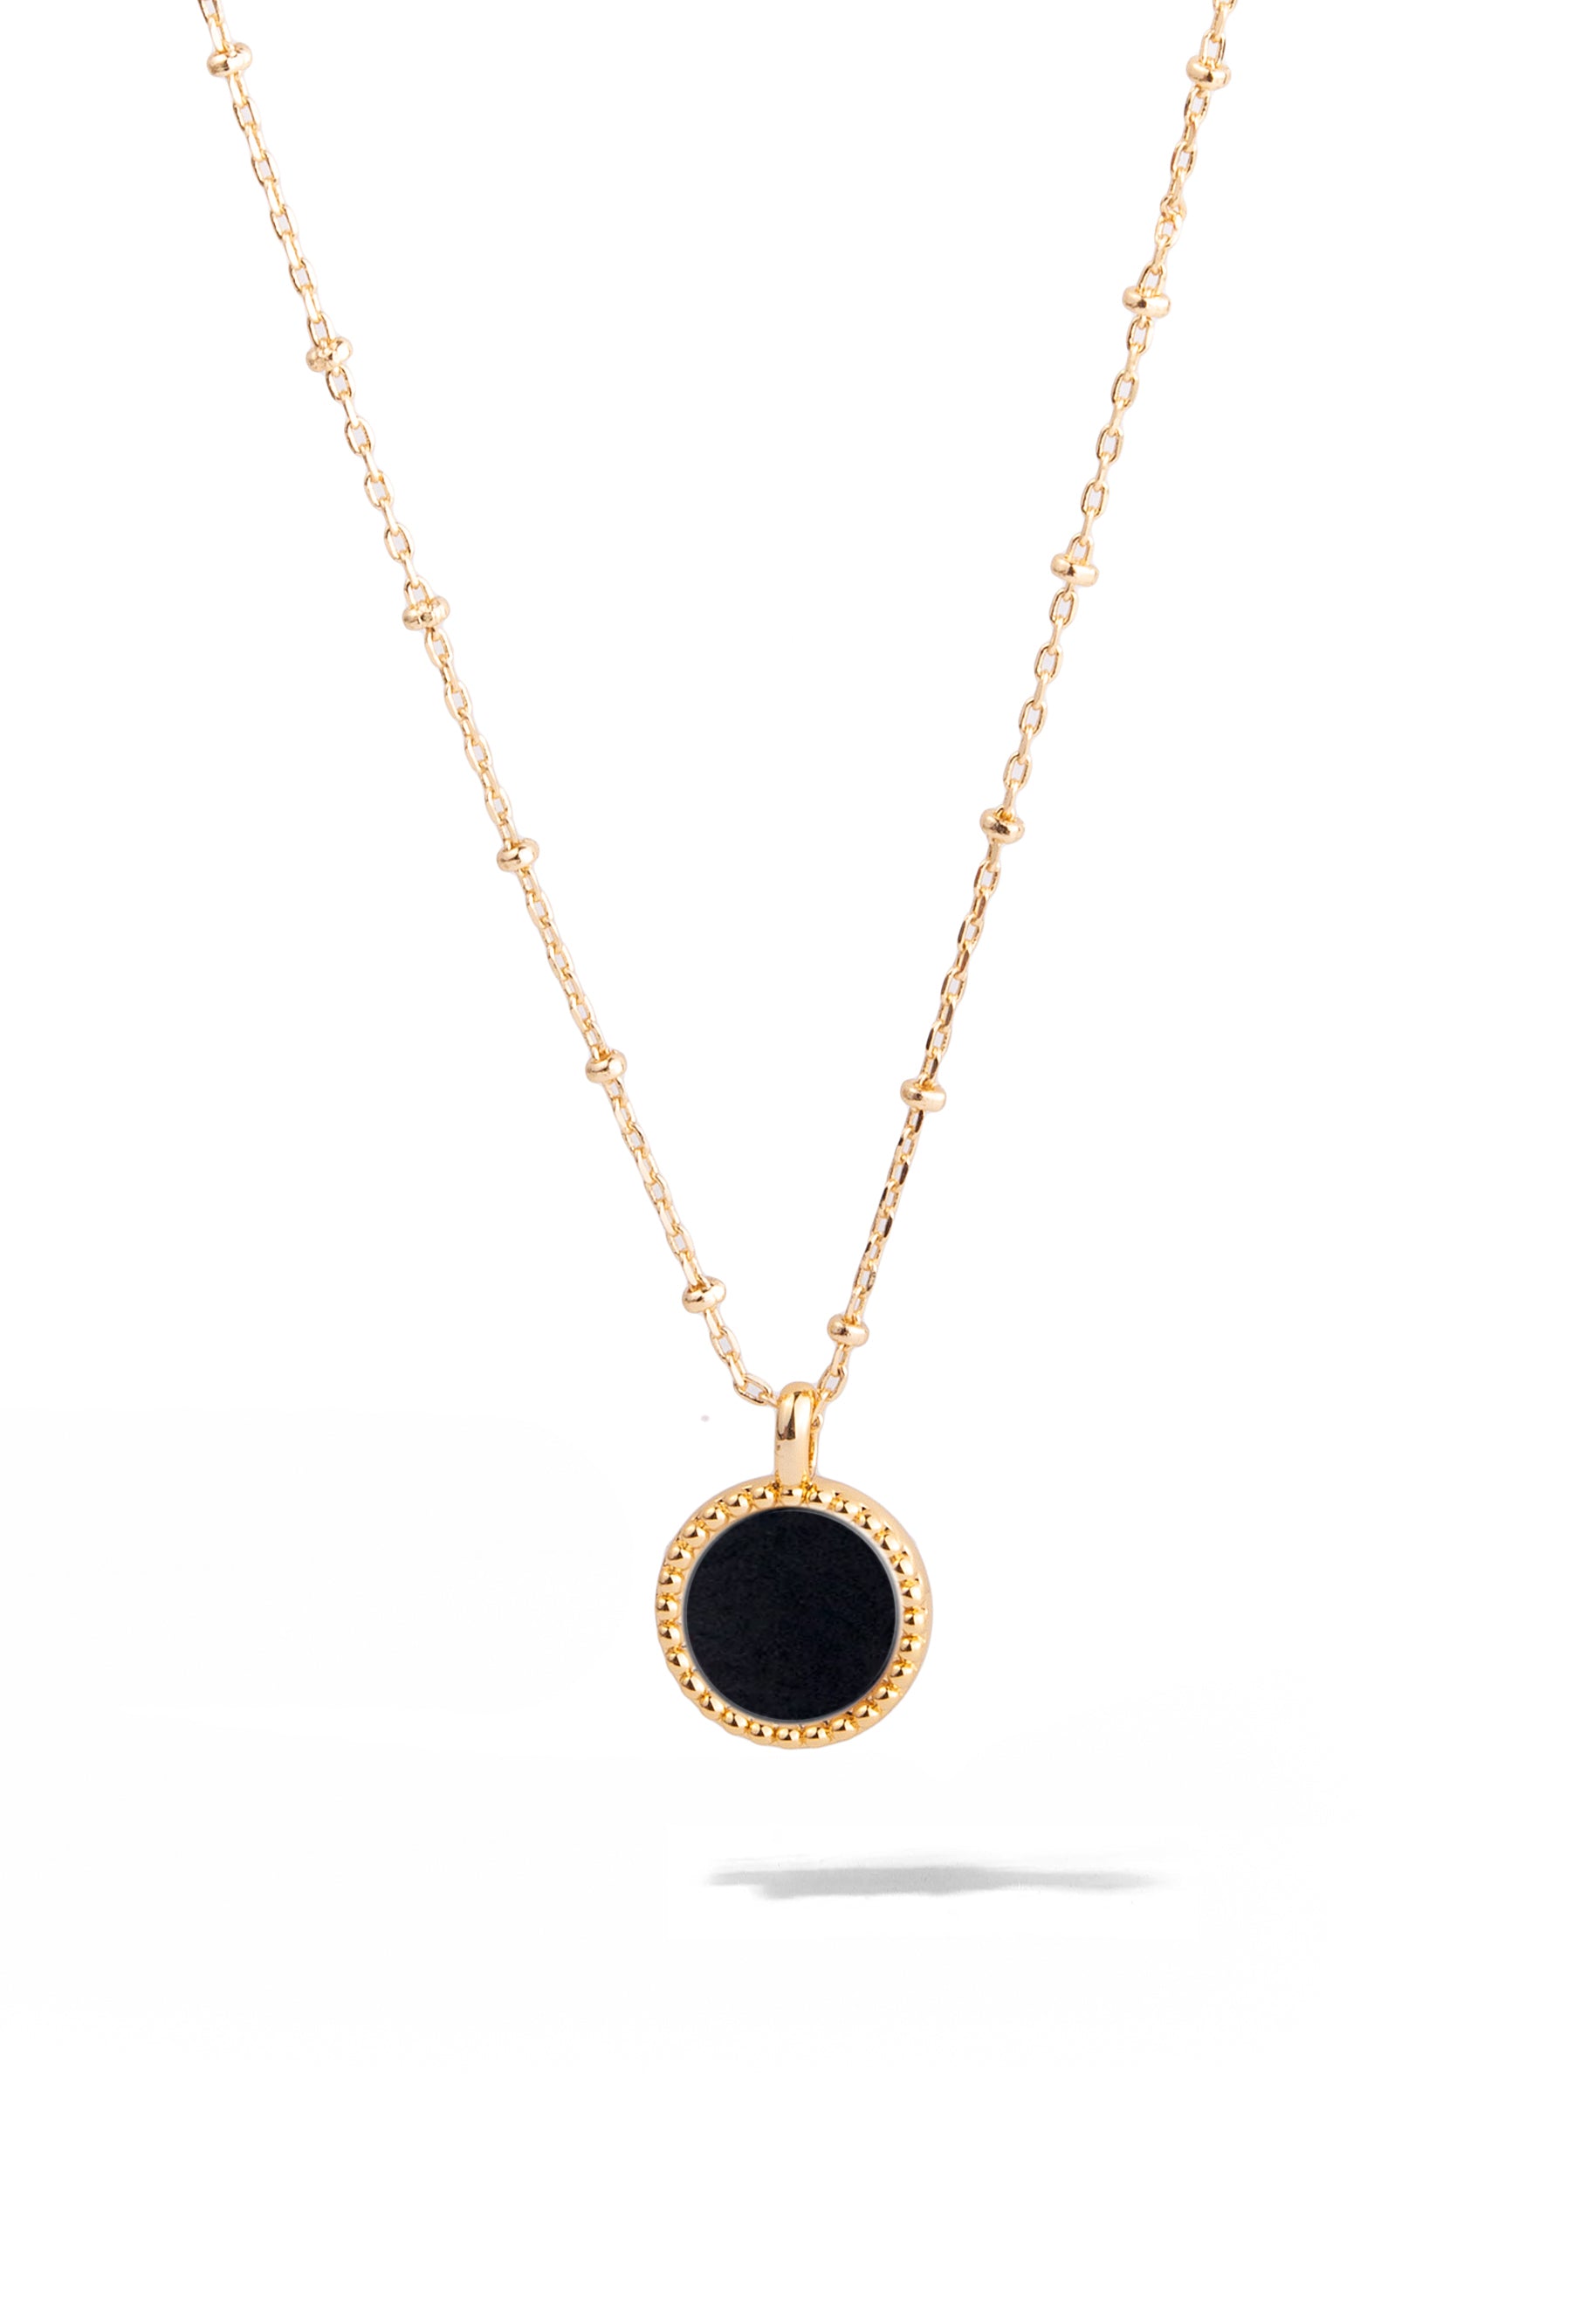 Black Onyx & Gold Three Piece Jewelry Set